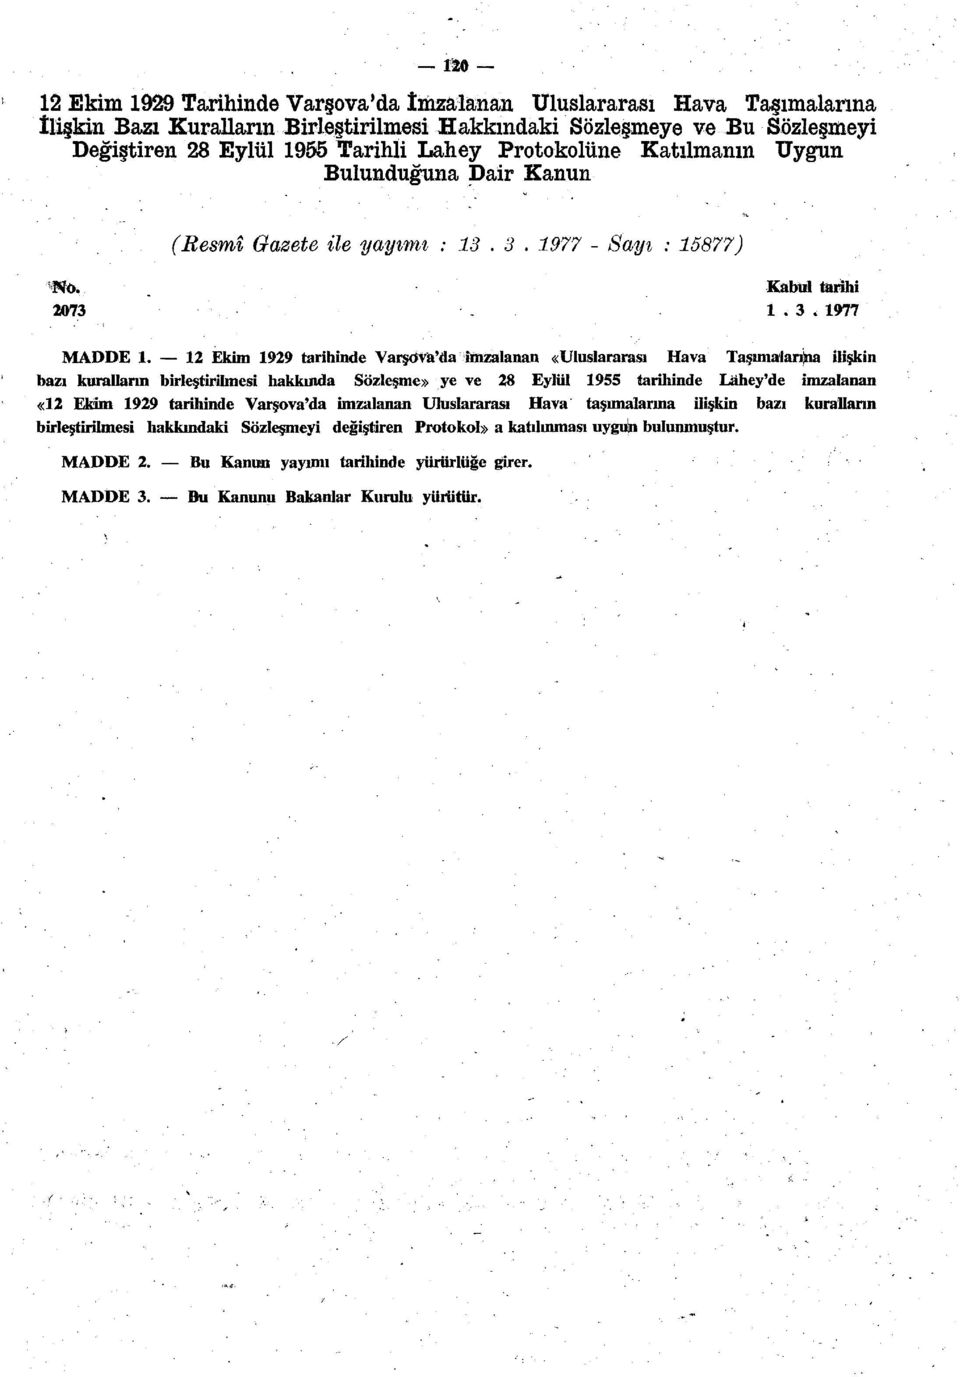 12 Ekim 1929 tarihinde Varşova'da imzalanan «Uluslararası Hava Taşımalarıma ilişkin bazı kuralların birleştirilmesi hakkında Sözleşme» ye ve 28 Eylül 1955 tarihinde Lahey'de imzalanan «12 Ekim 1929